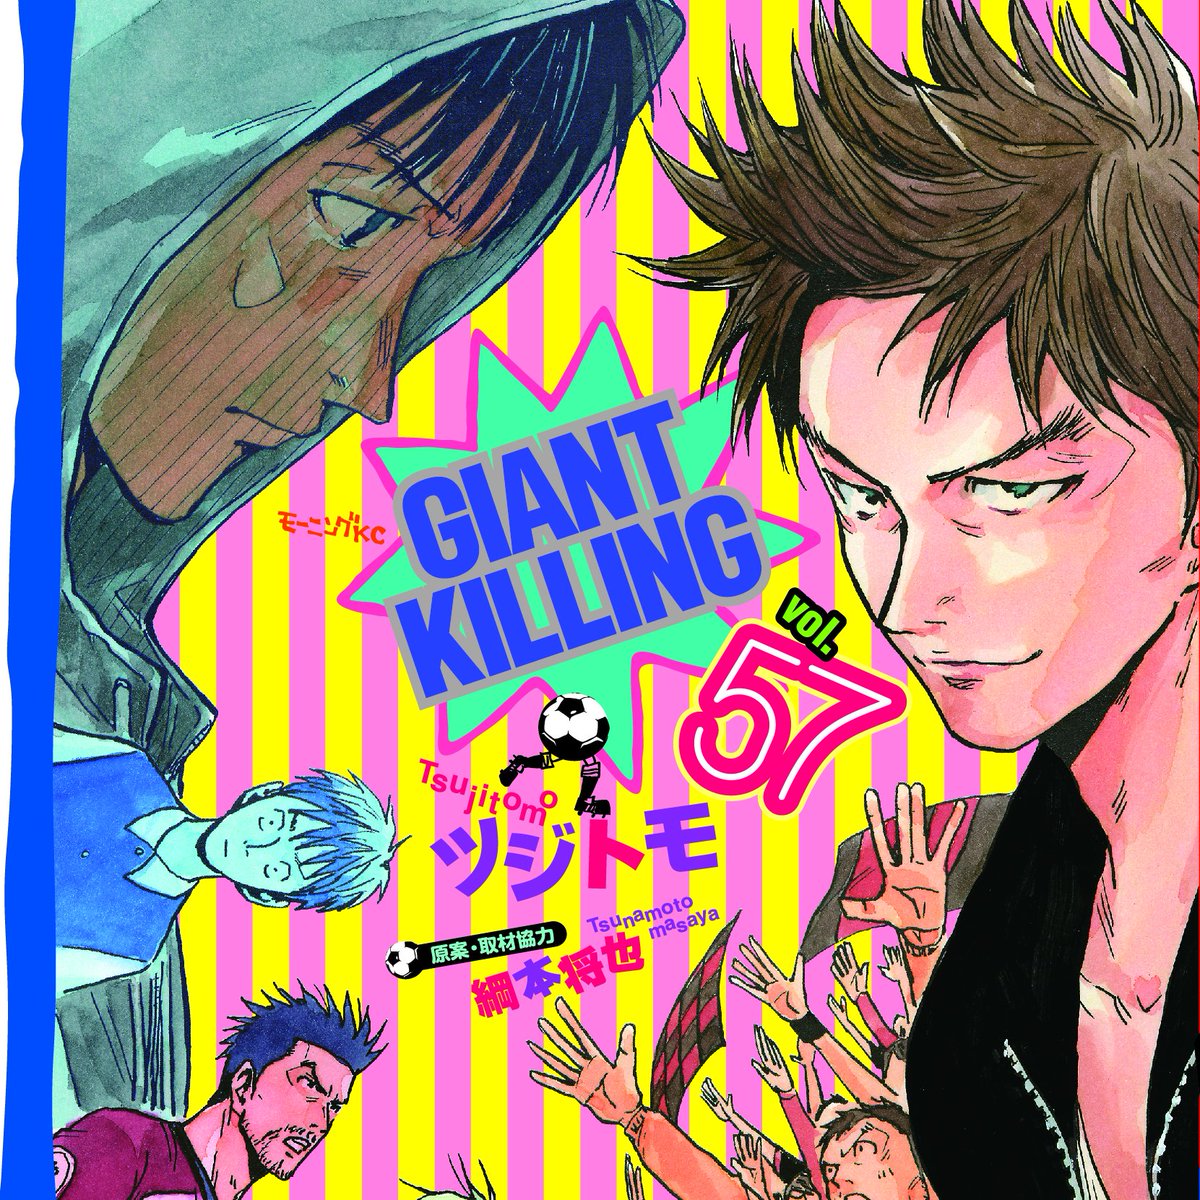 ツジトモ 綱本将也 Giant Killing 最新刊57巻 12月23日発売